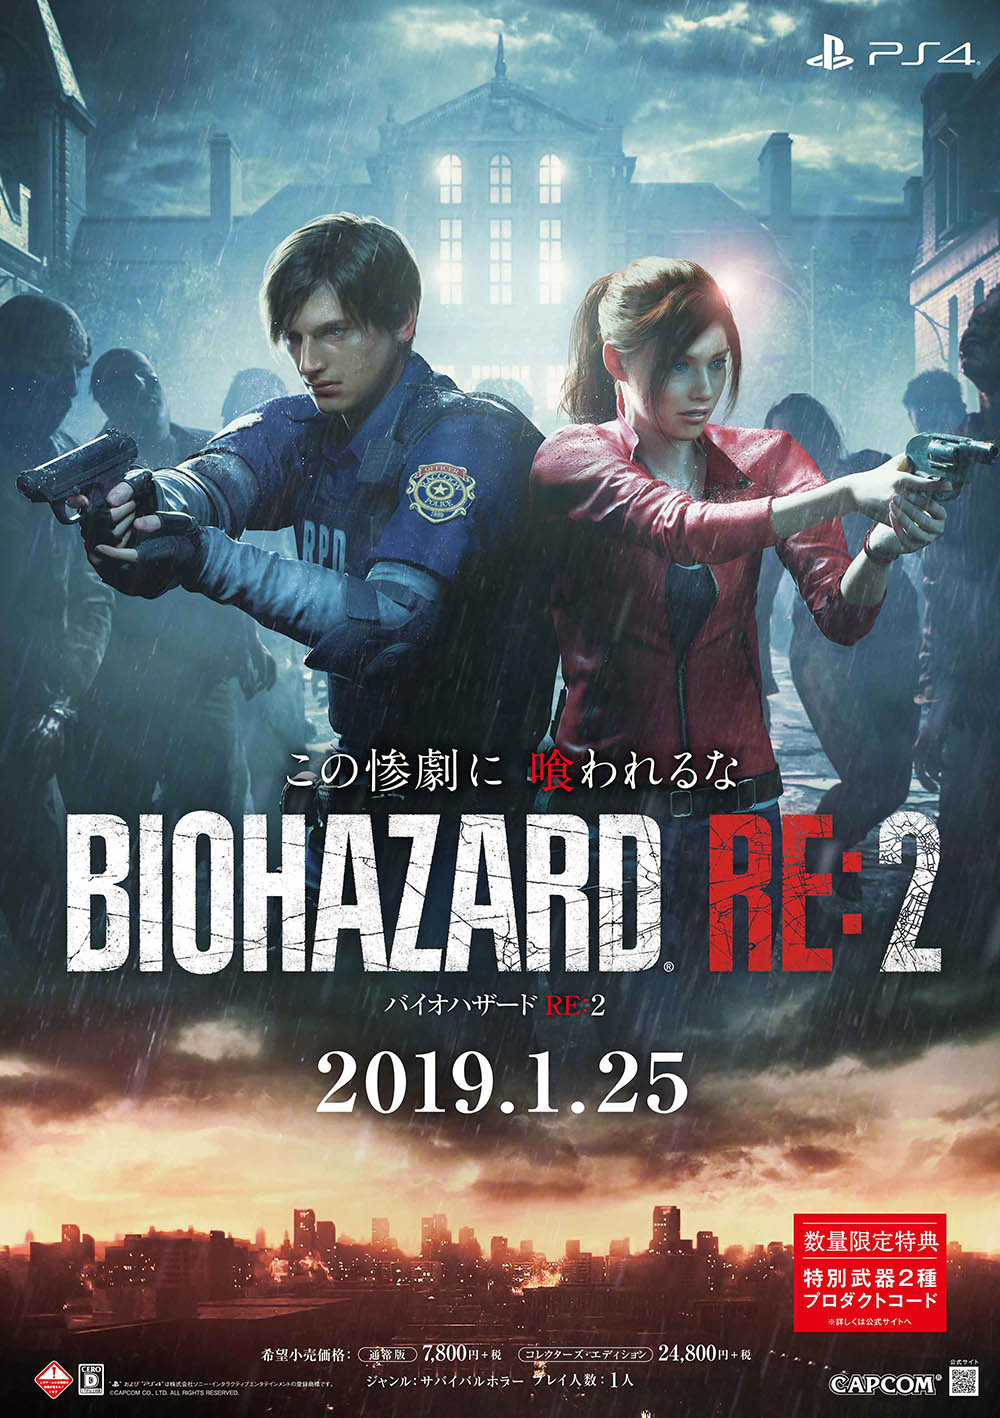 Biohazard RE:2 — PS4